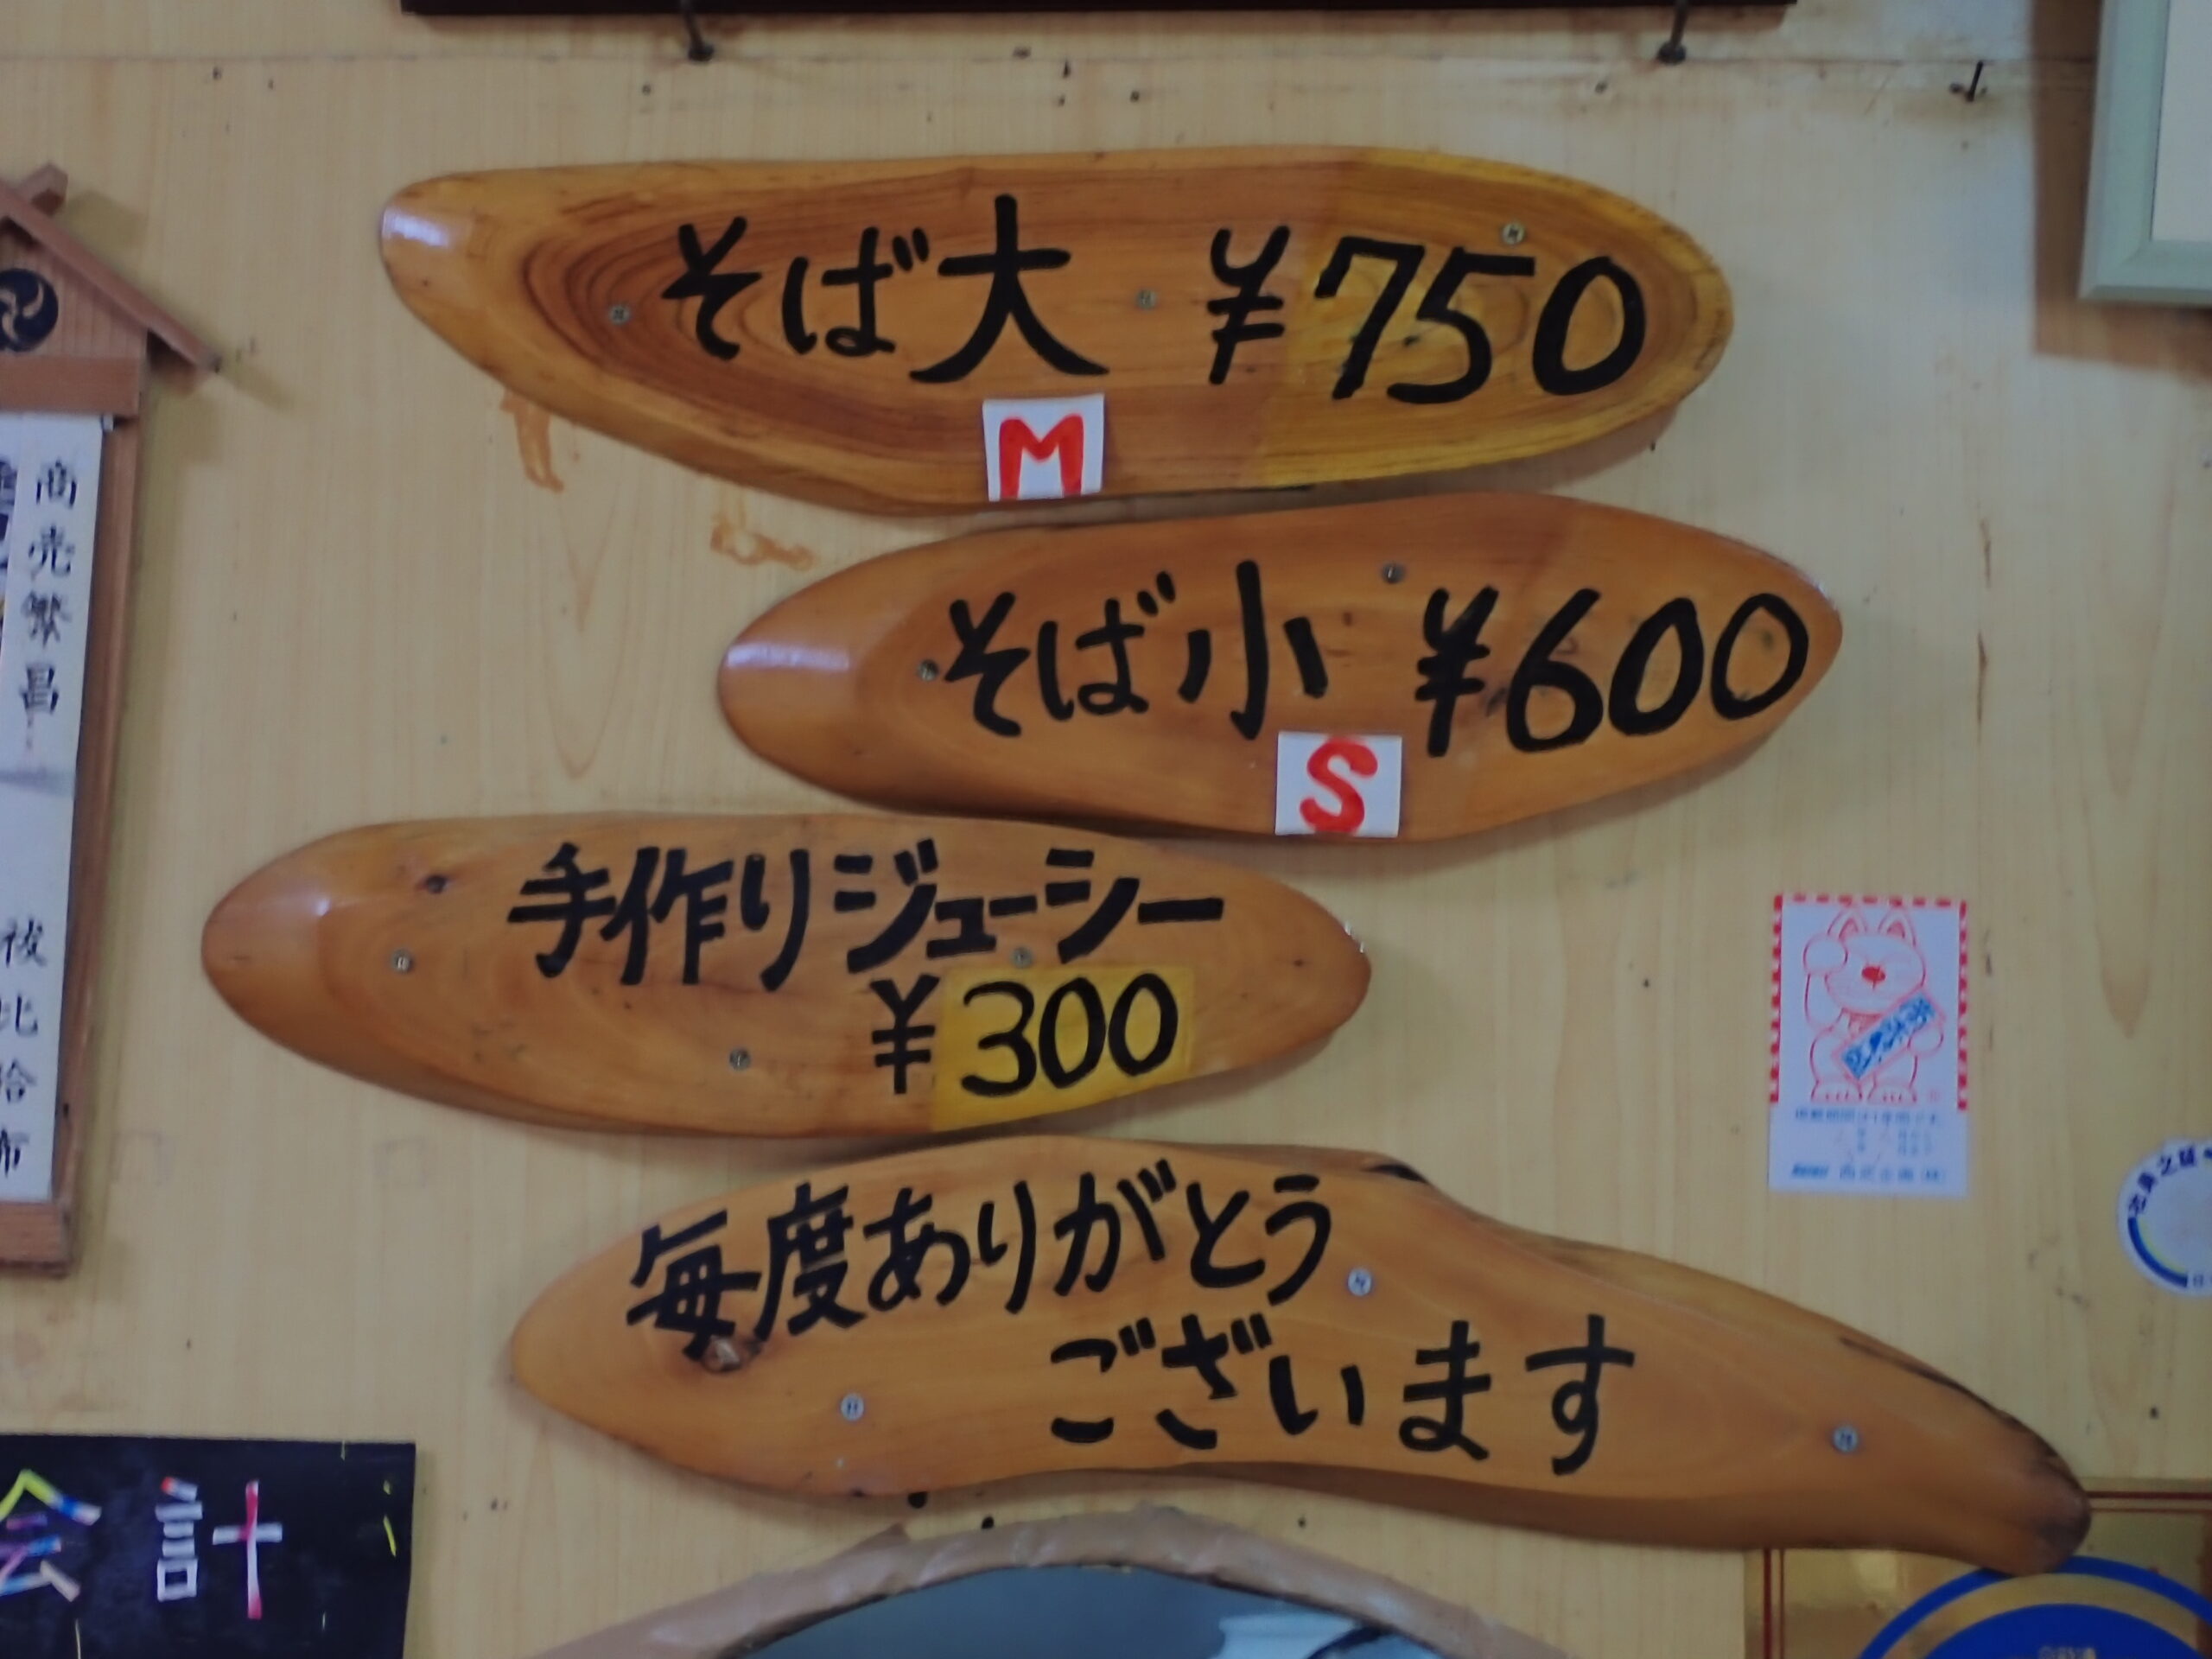 沖縄本部町にある行列ができる手打ちそばの店きしもと食堂